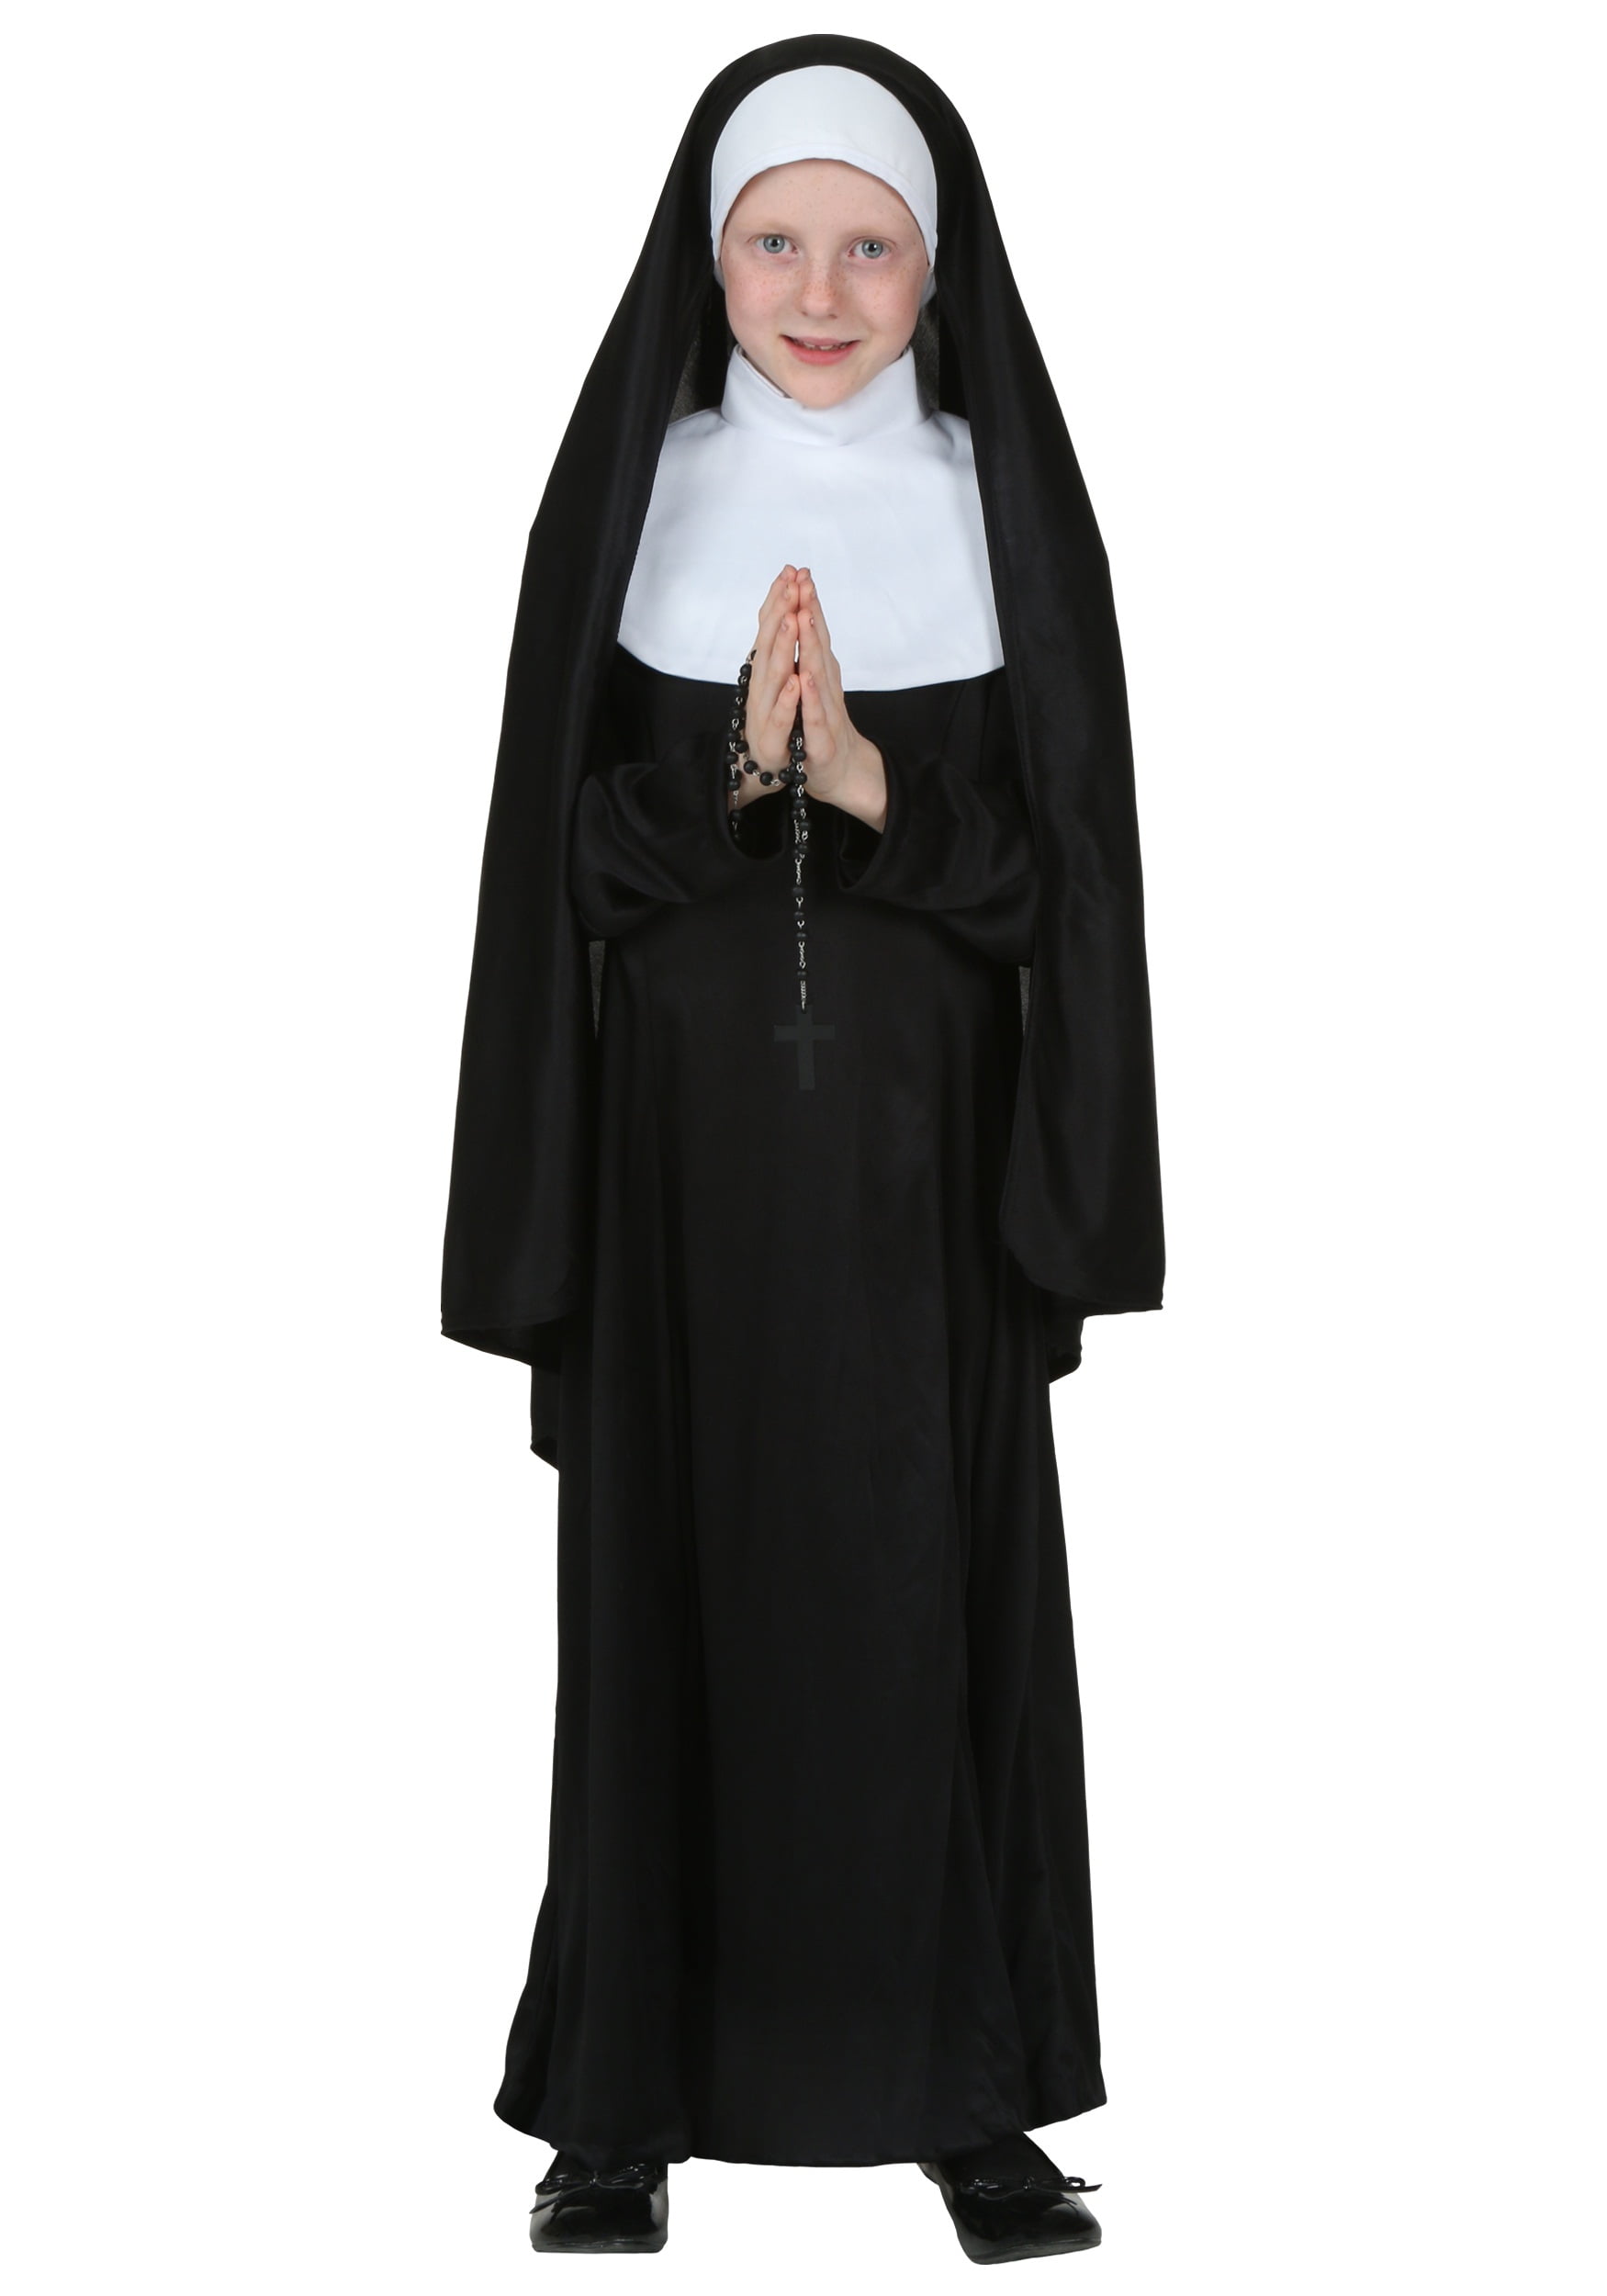 Nun Fancy Costume Dress 